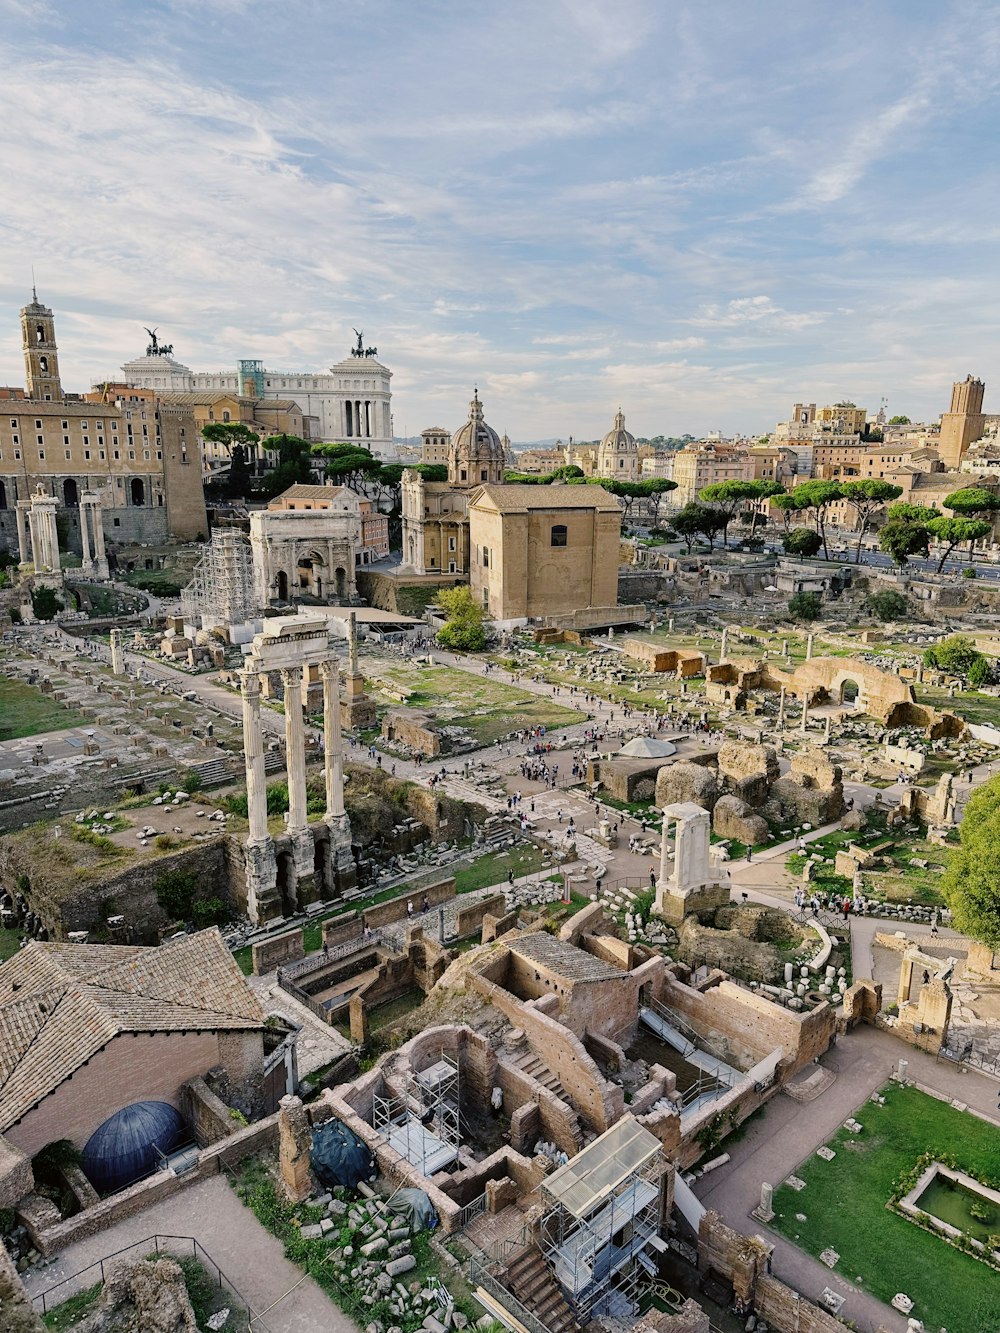 Une vue aérienne d’une ville romaine avec des ruines